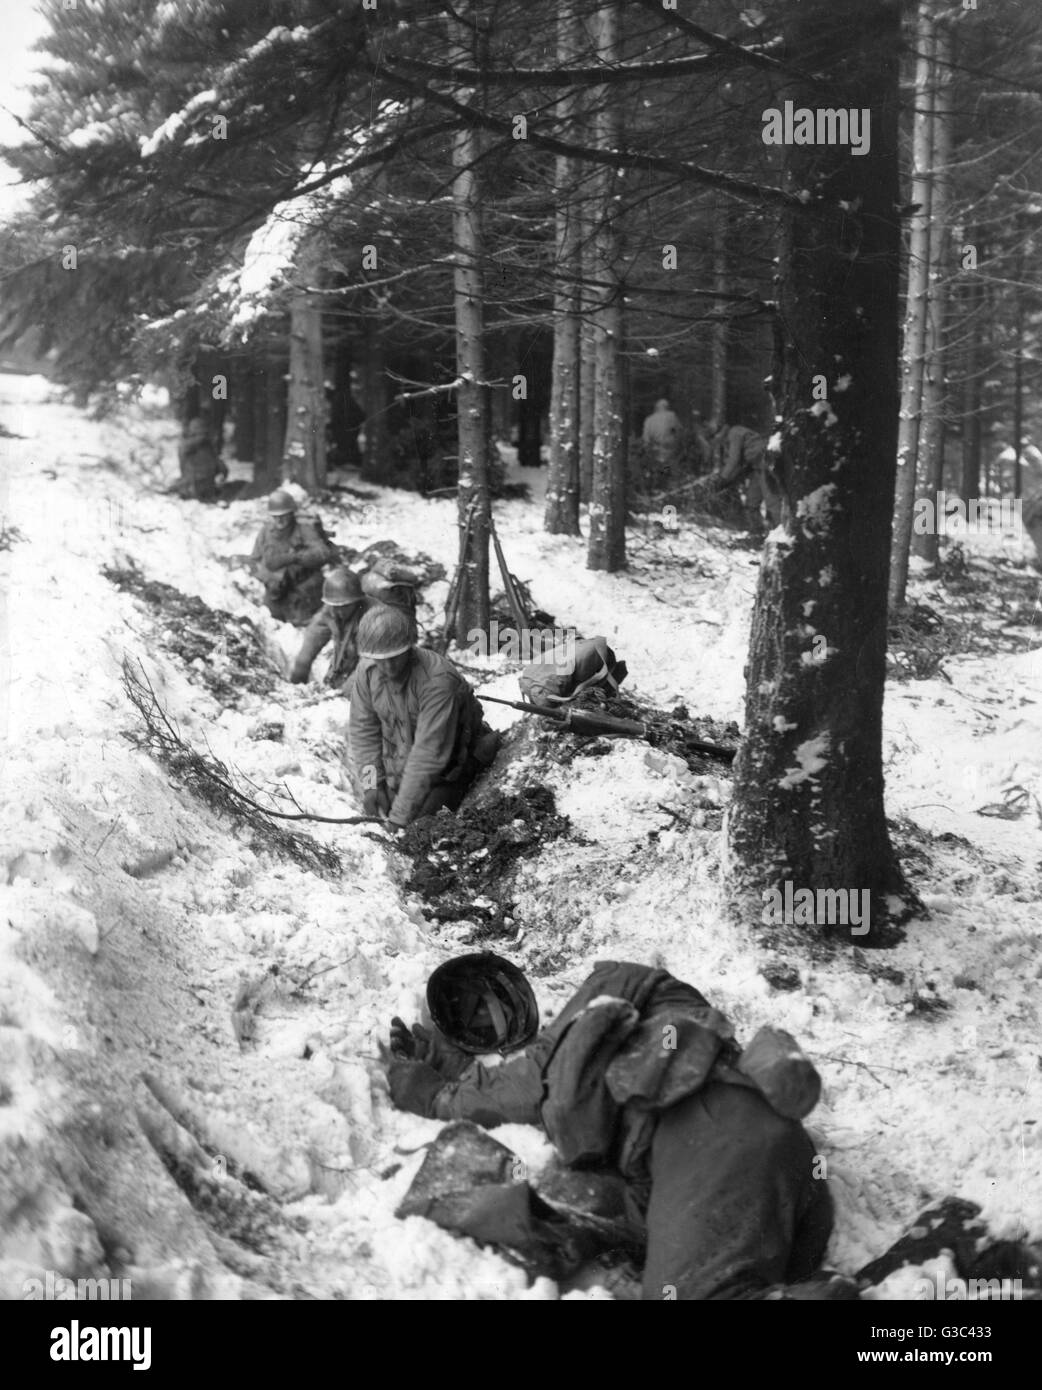 Soldati americani scavare in su il bordo di una foresta nella regione delle Ardenne del Belgio, scena del tedesco della controffensiva nel dicembre 1944 che divenne noto come la Battaglia di Bulge Data: Dicembre 1944 Foto Stock